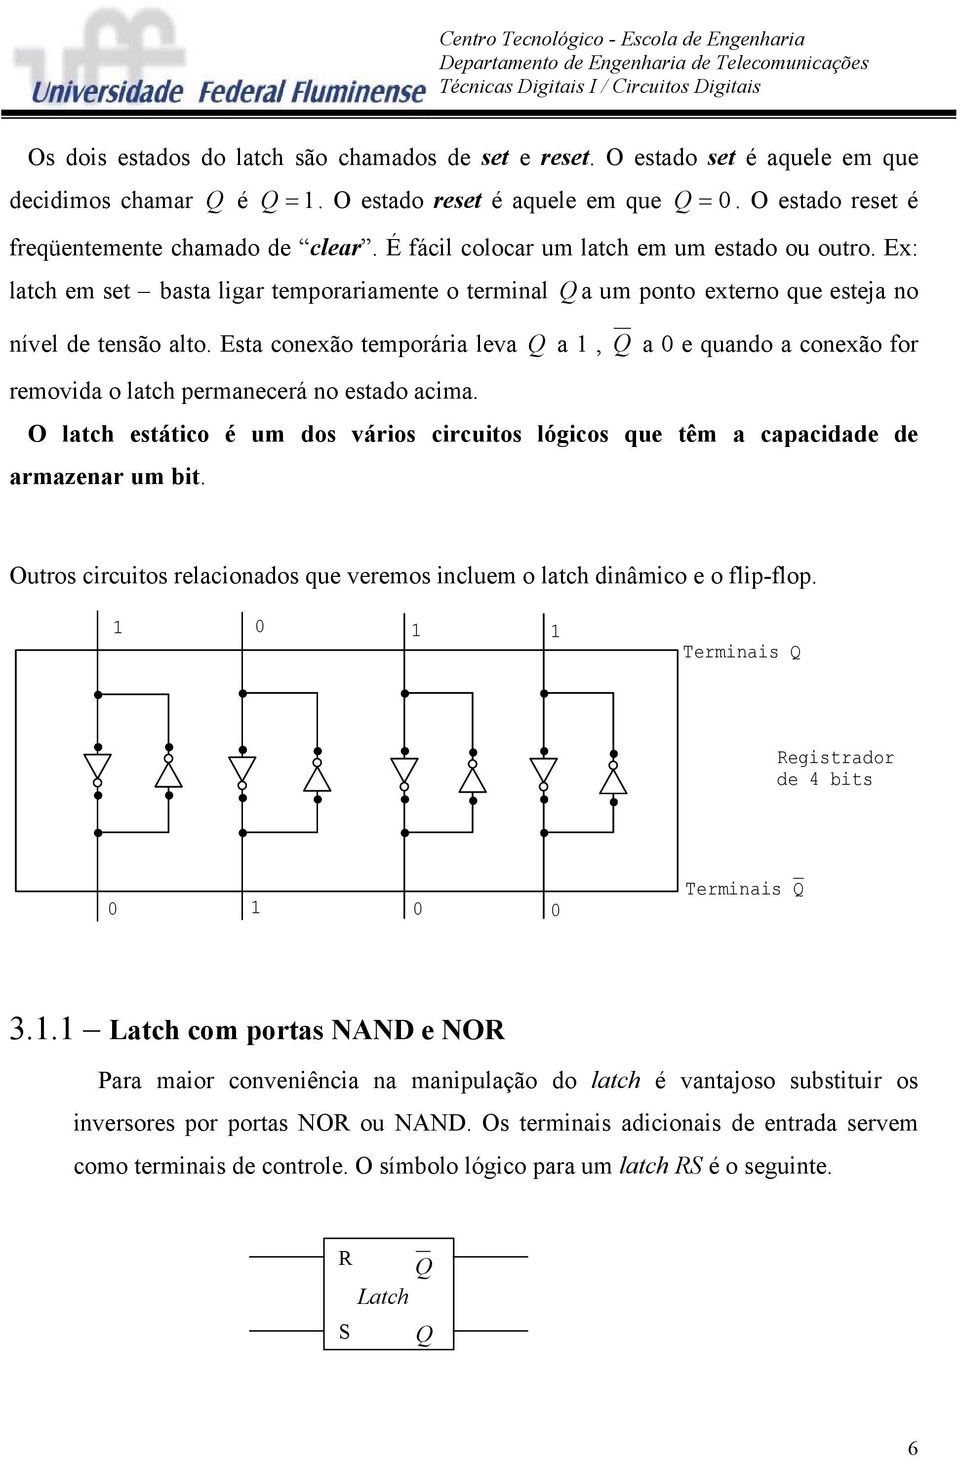 Esta conexão temporária leva Q a 1, Q a 0 e quando a conexão for removida o latch permanecerá no estado acima.